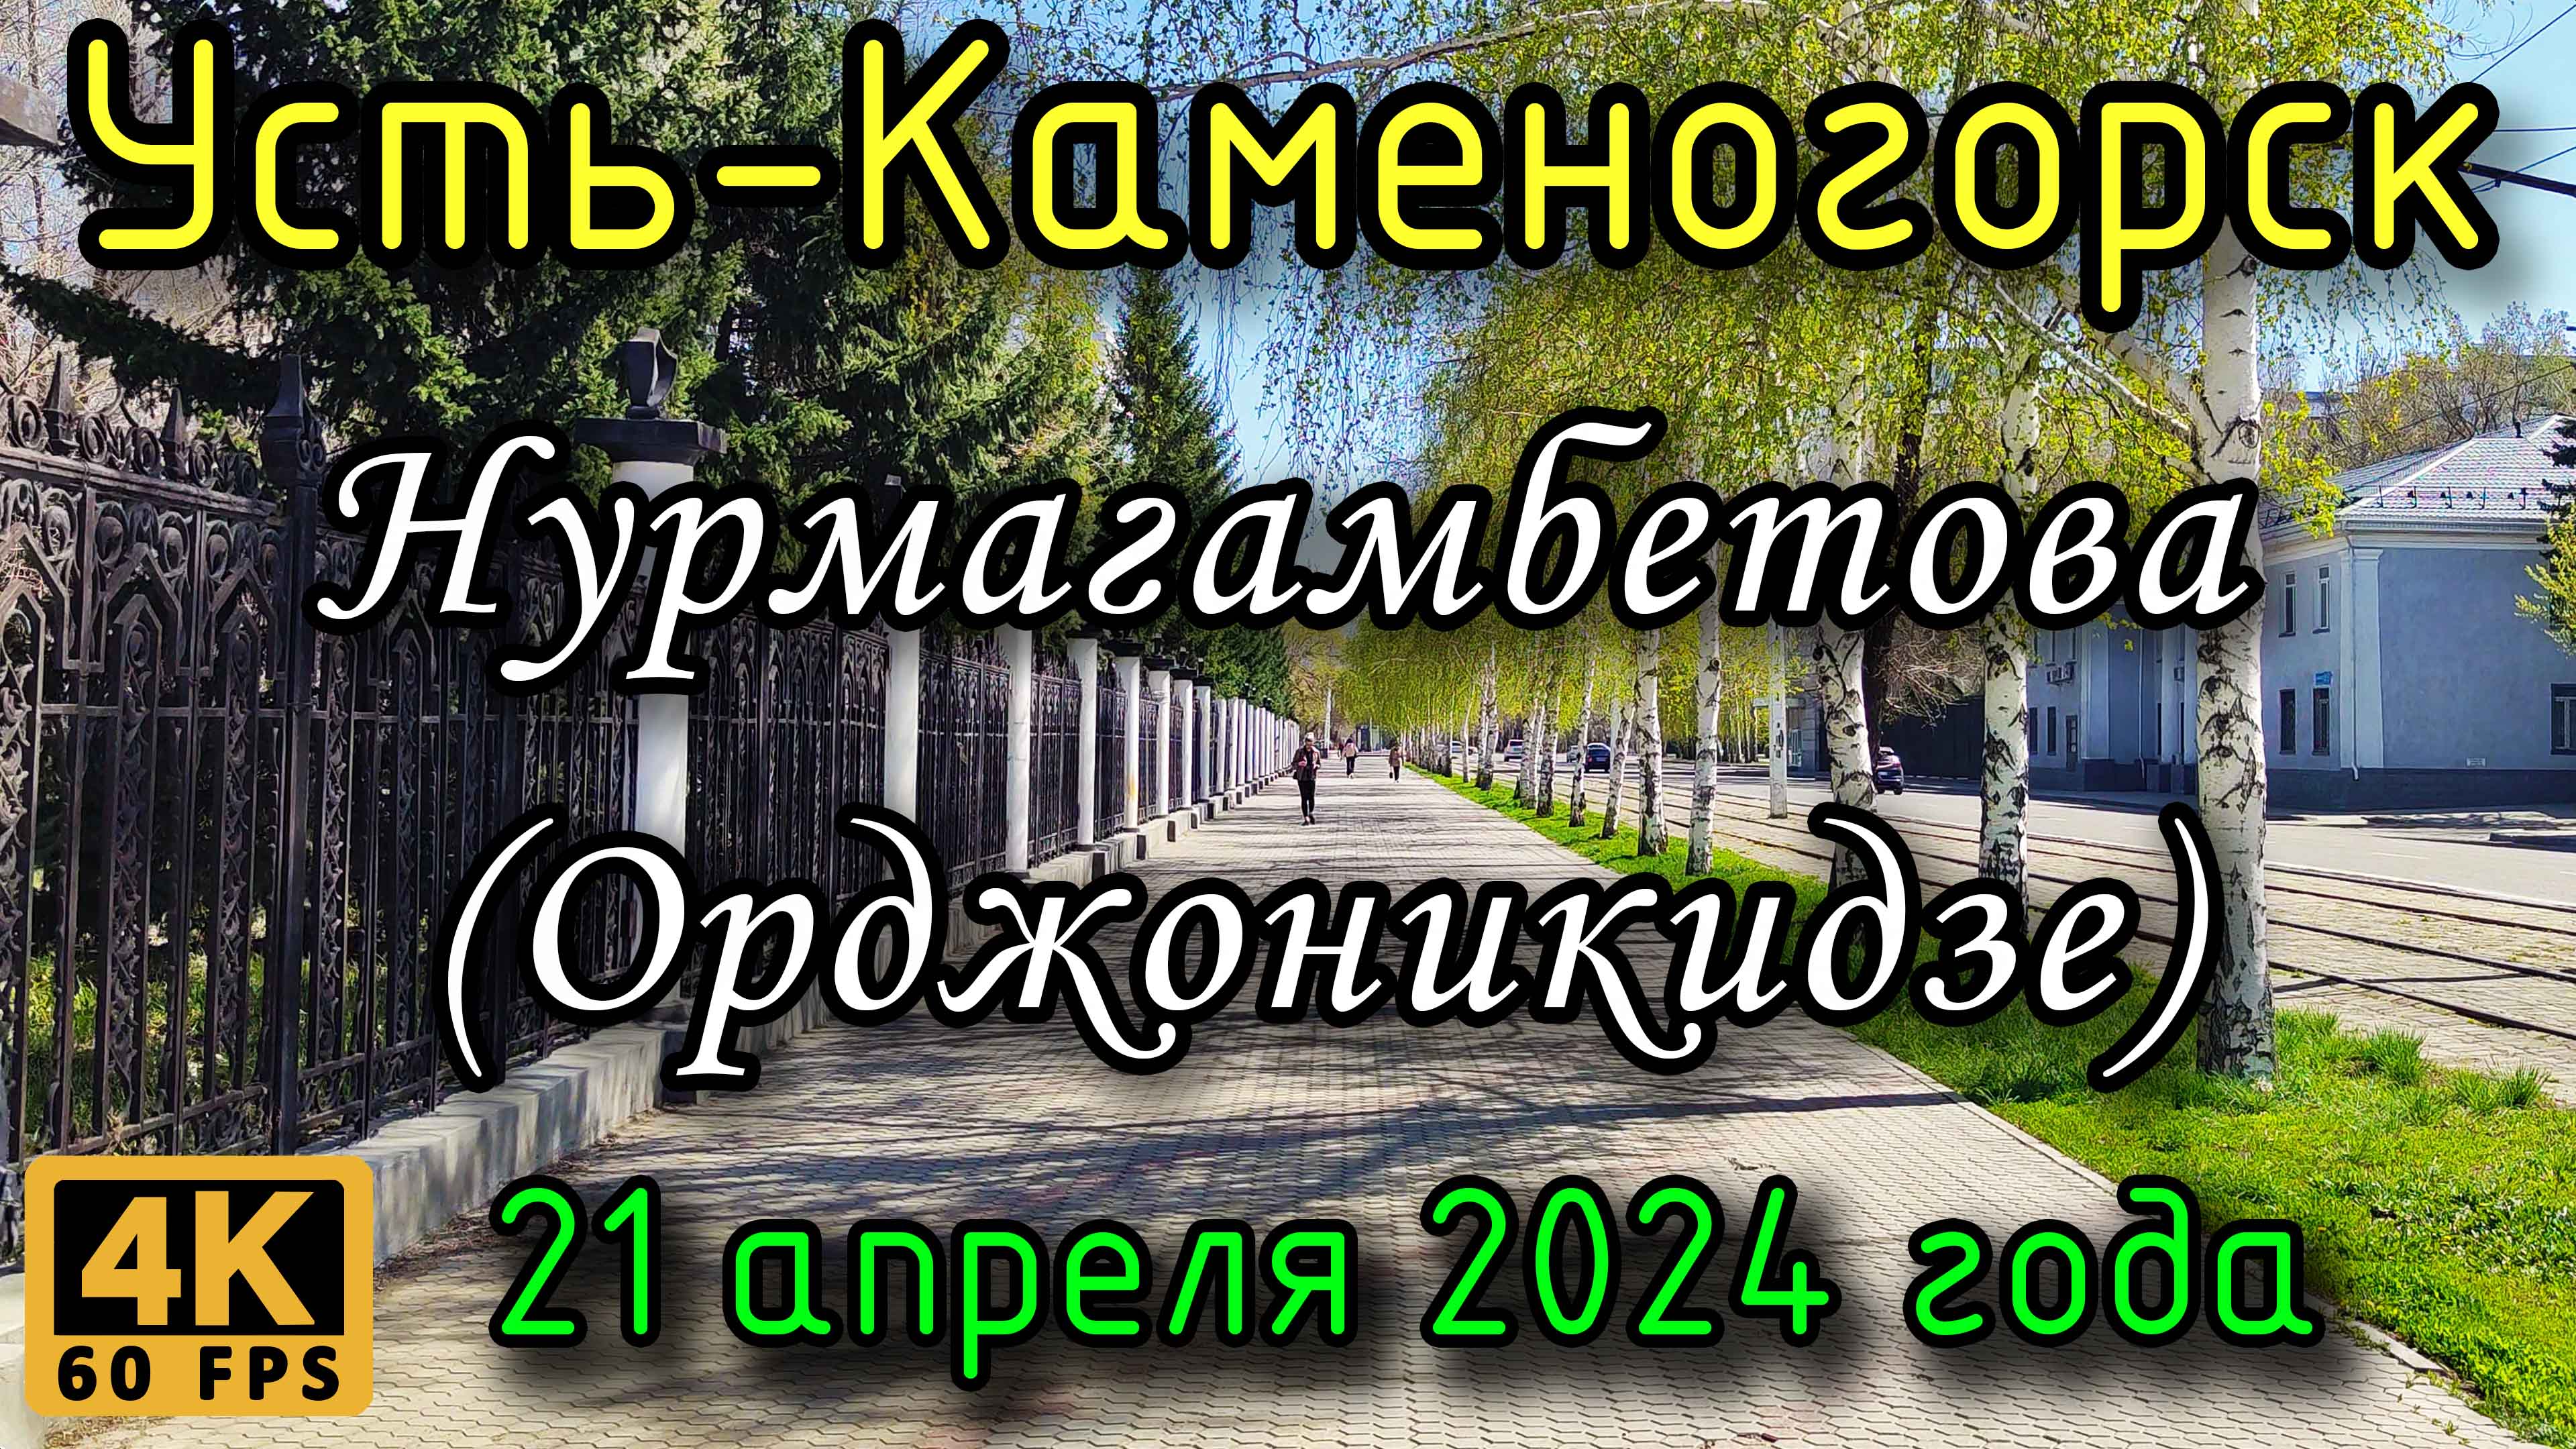 Усть-Каменогорск: ул. Нурмагамбетова (Орджоникидзе) в 4К, 21 апреля 2024 года.